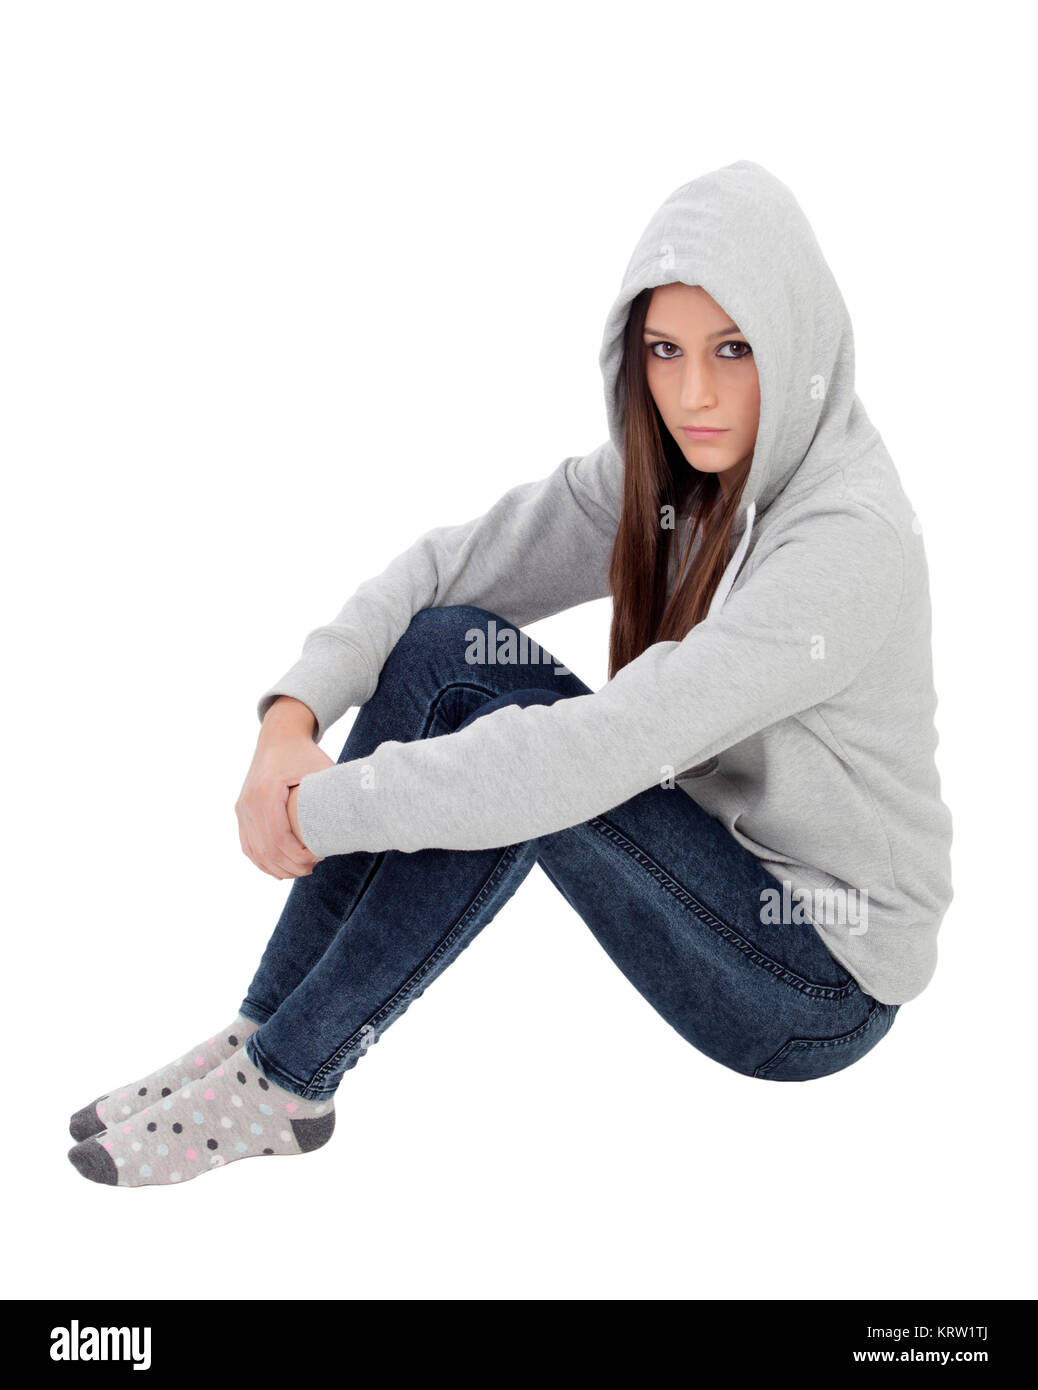 Angry hooded girl with grey sweatshirt sitting on the floor Stock Photo